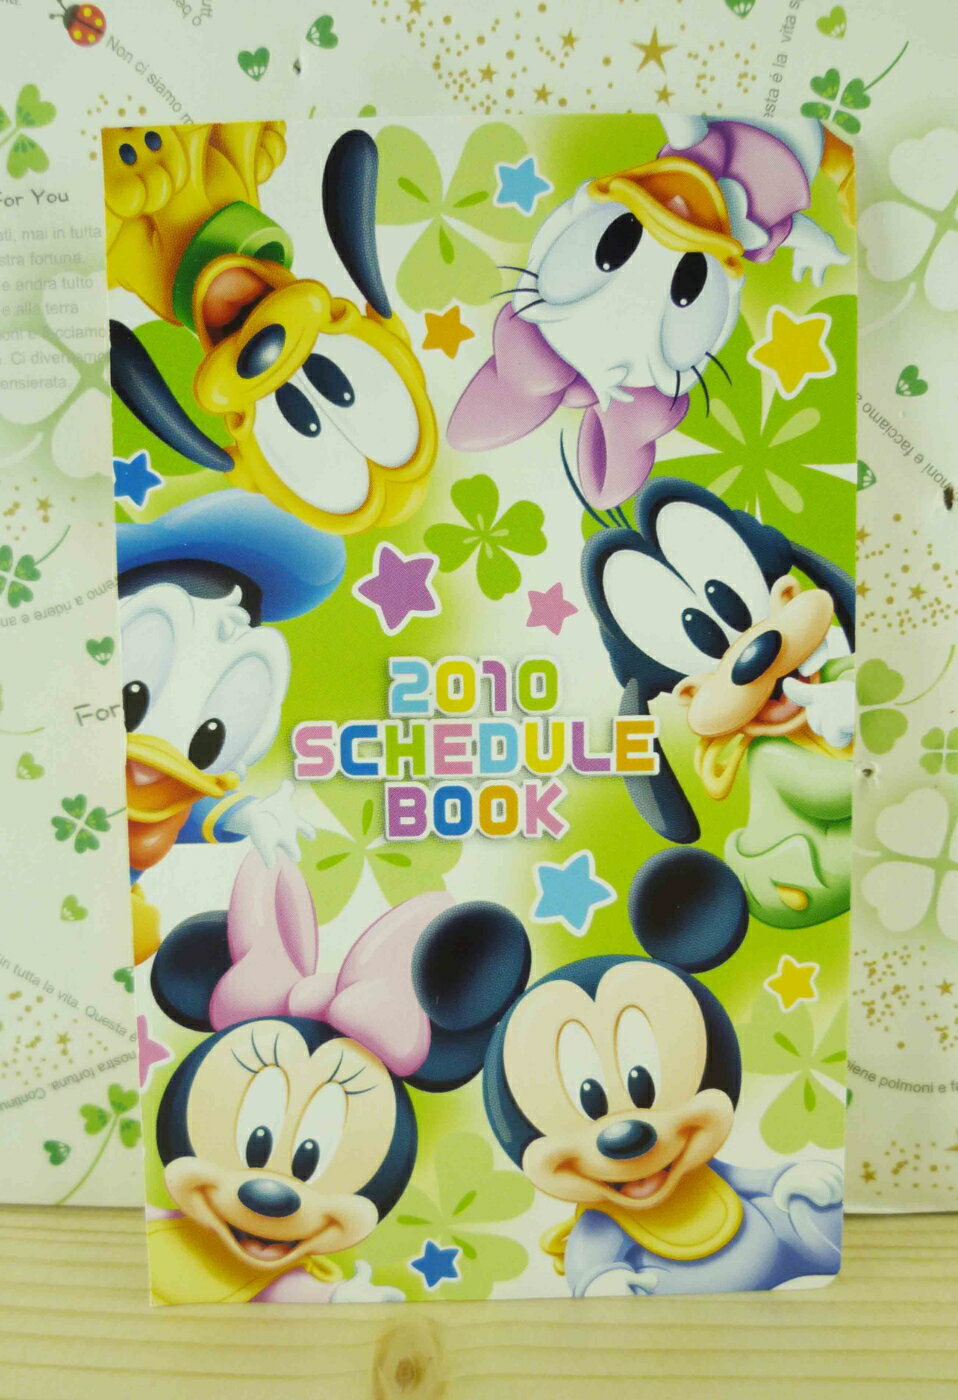 【震撼精品百貨】Micky Mouse 米奇/米妮 卡片-迪士尼人物圖案-幸運草 震撼日式精品百貨